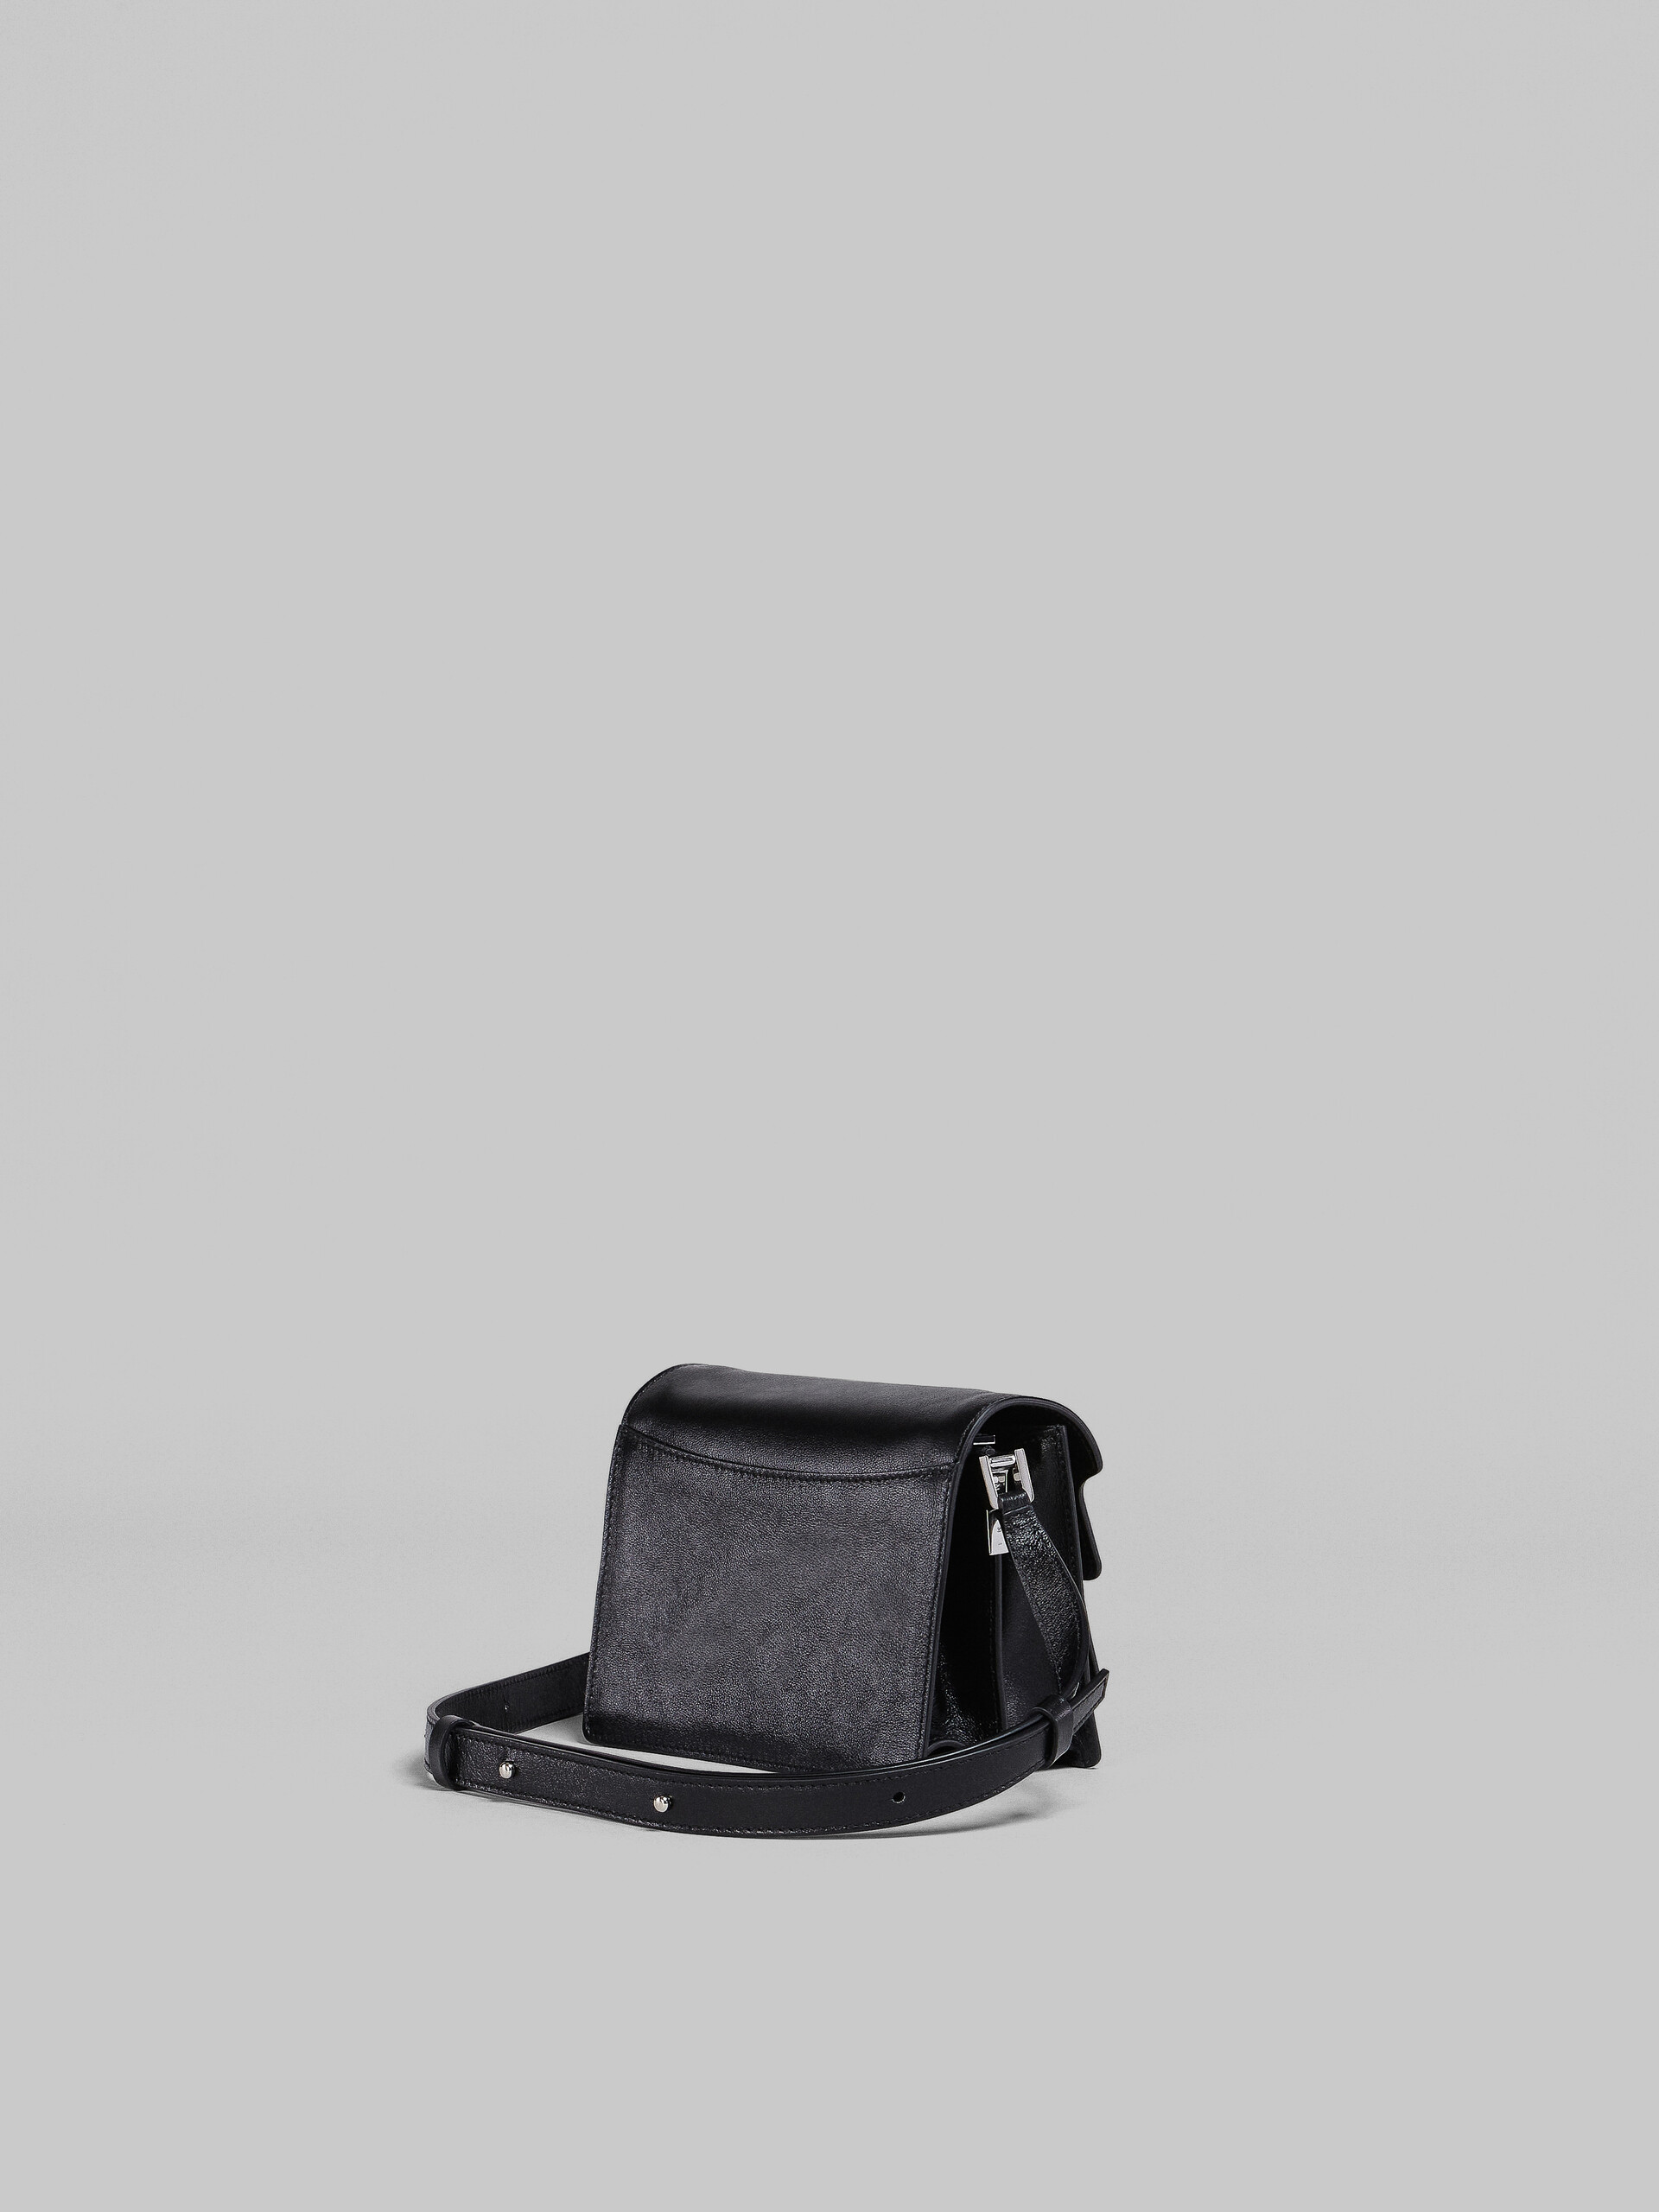 Mini-sac Trunk Soft en cuir noir - Sacs portés épaule - Image 3